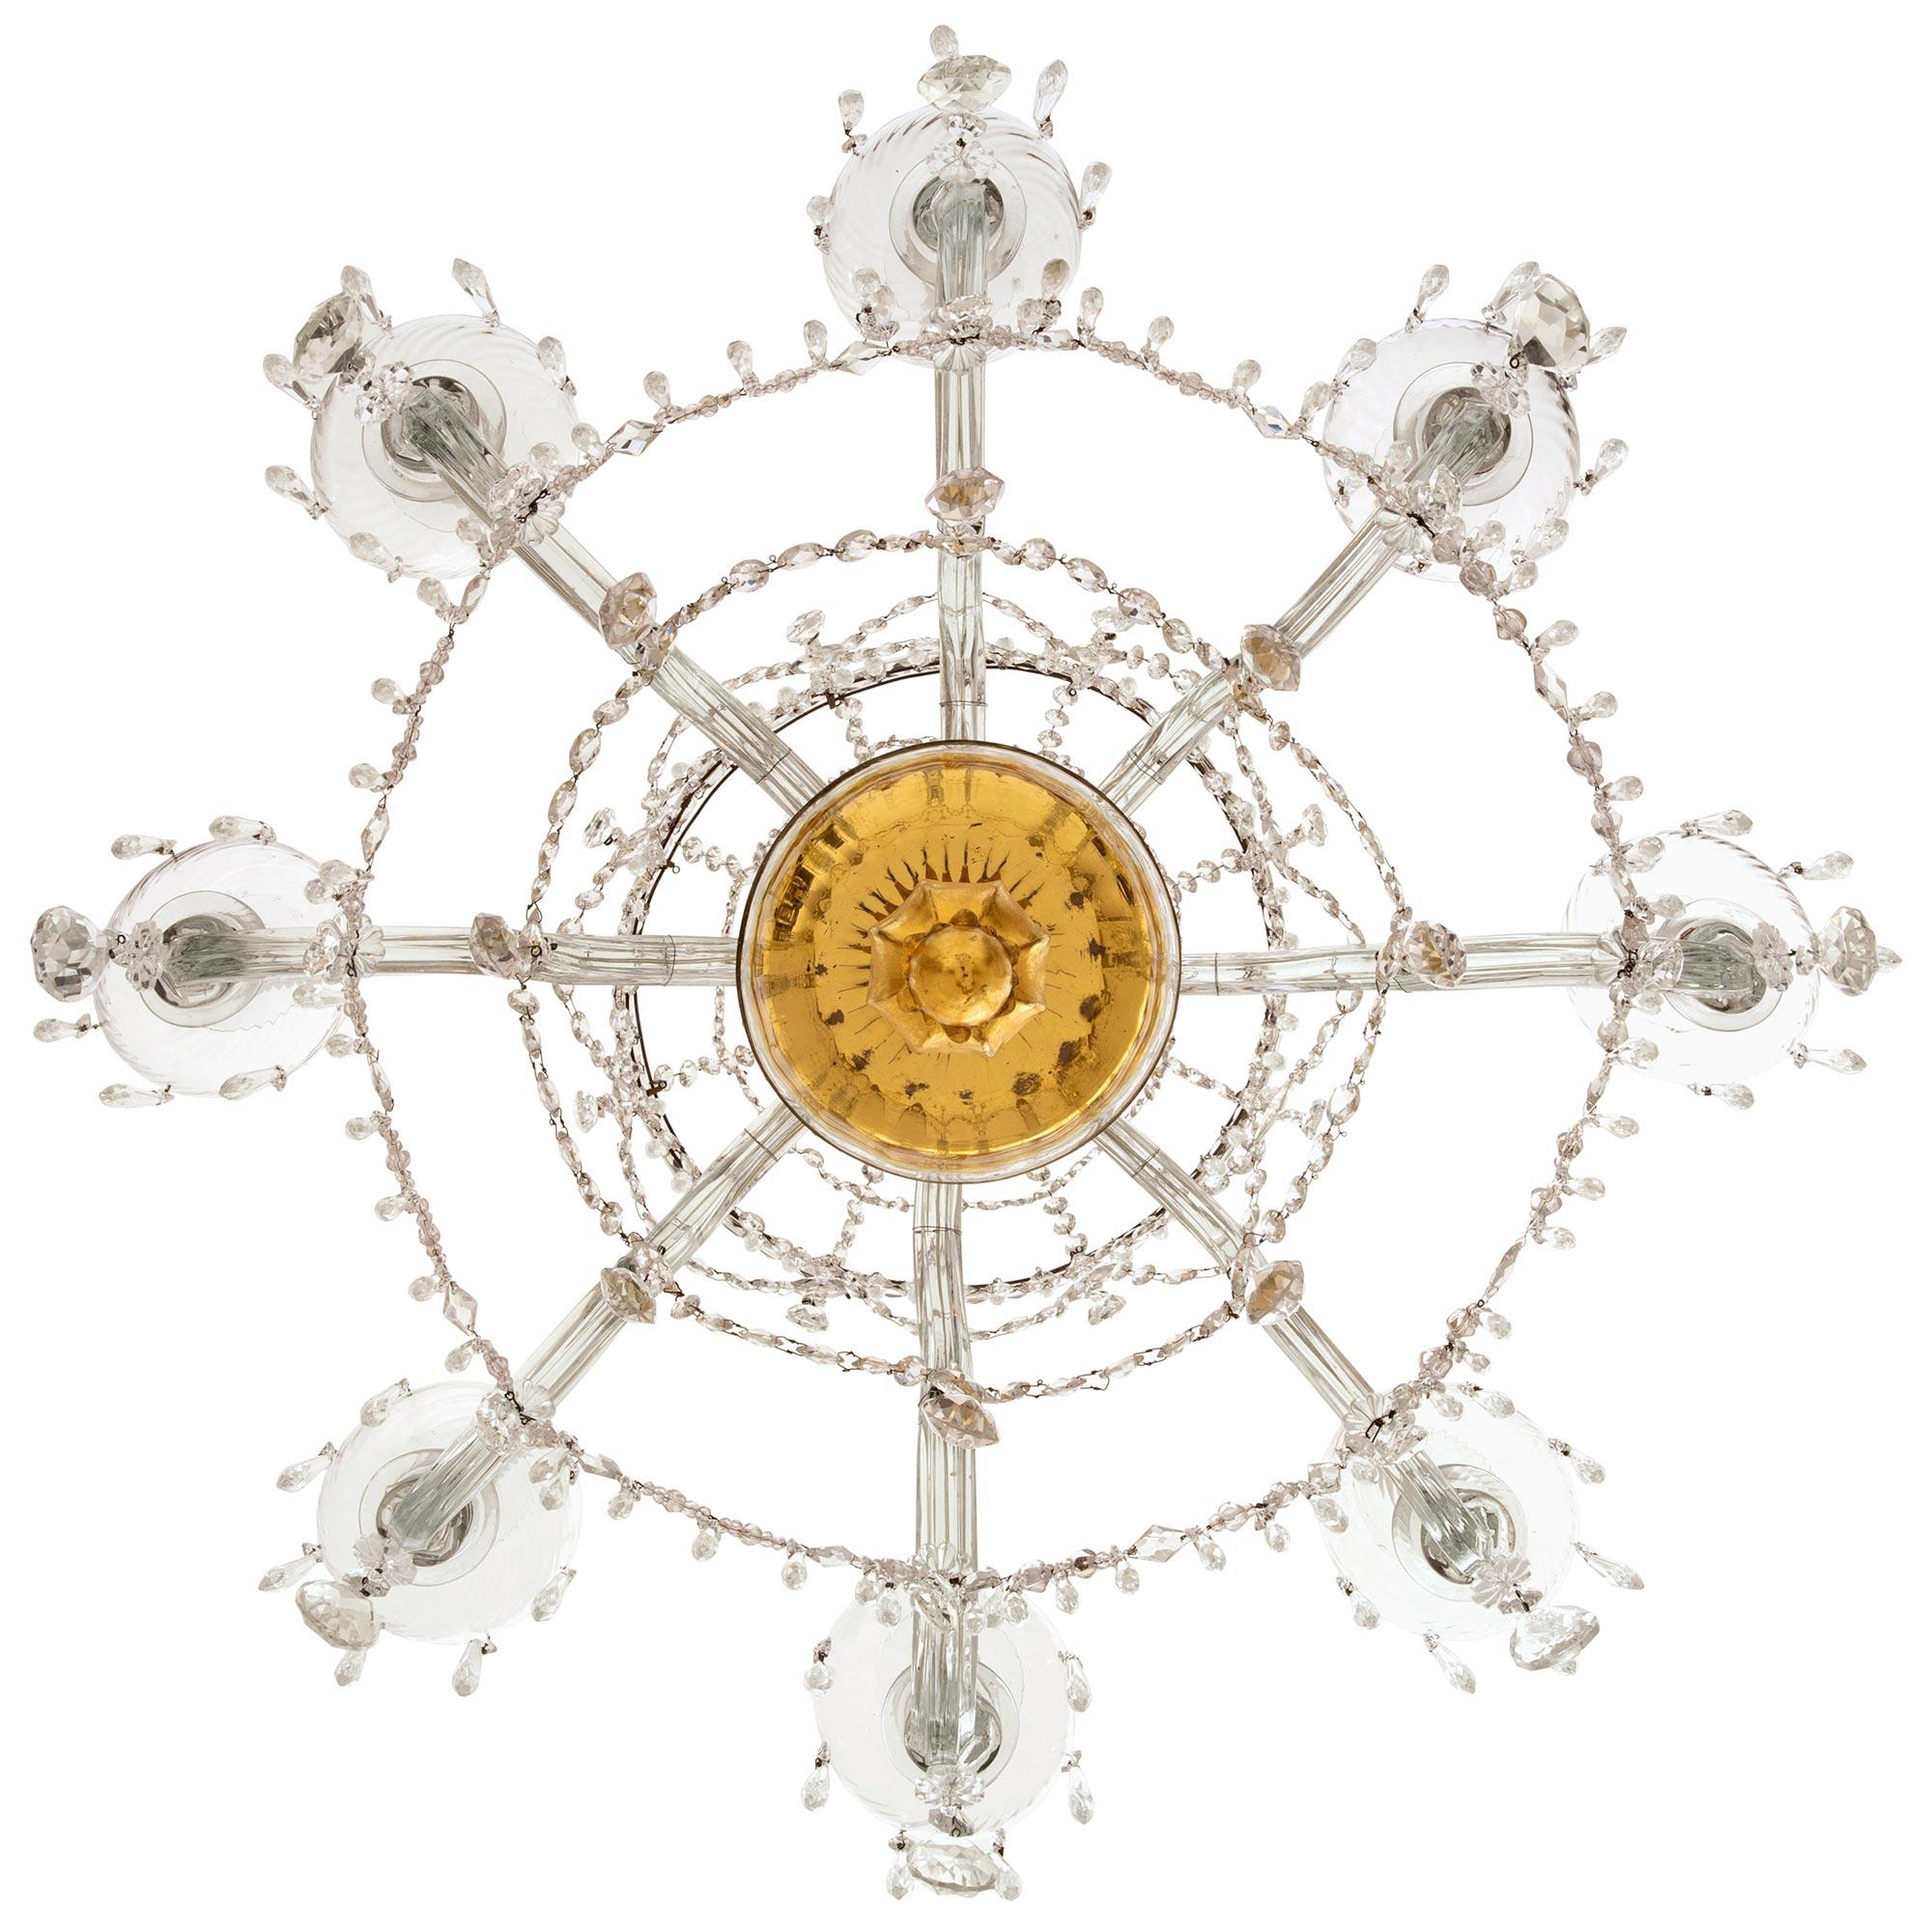 Superbe et extrêmement décoratif lustre italien du 18ème siècle en verre de Murano et bois doré. Le lustre à huit bras est centré par un magnifique épi de faîtage en bois doré richement sculpté, sous l'élégant support en verre de Murano incurvé et